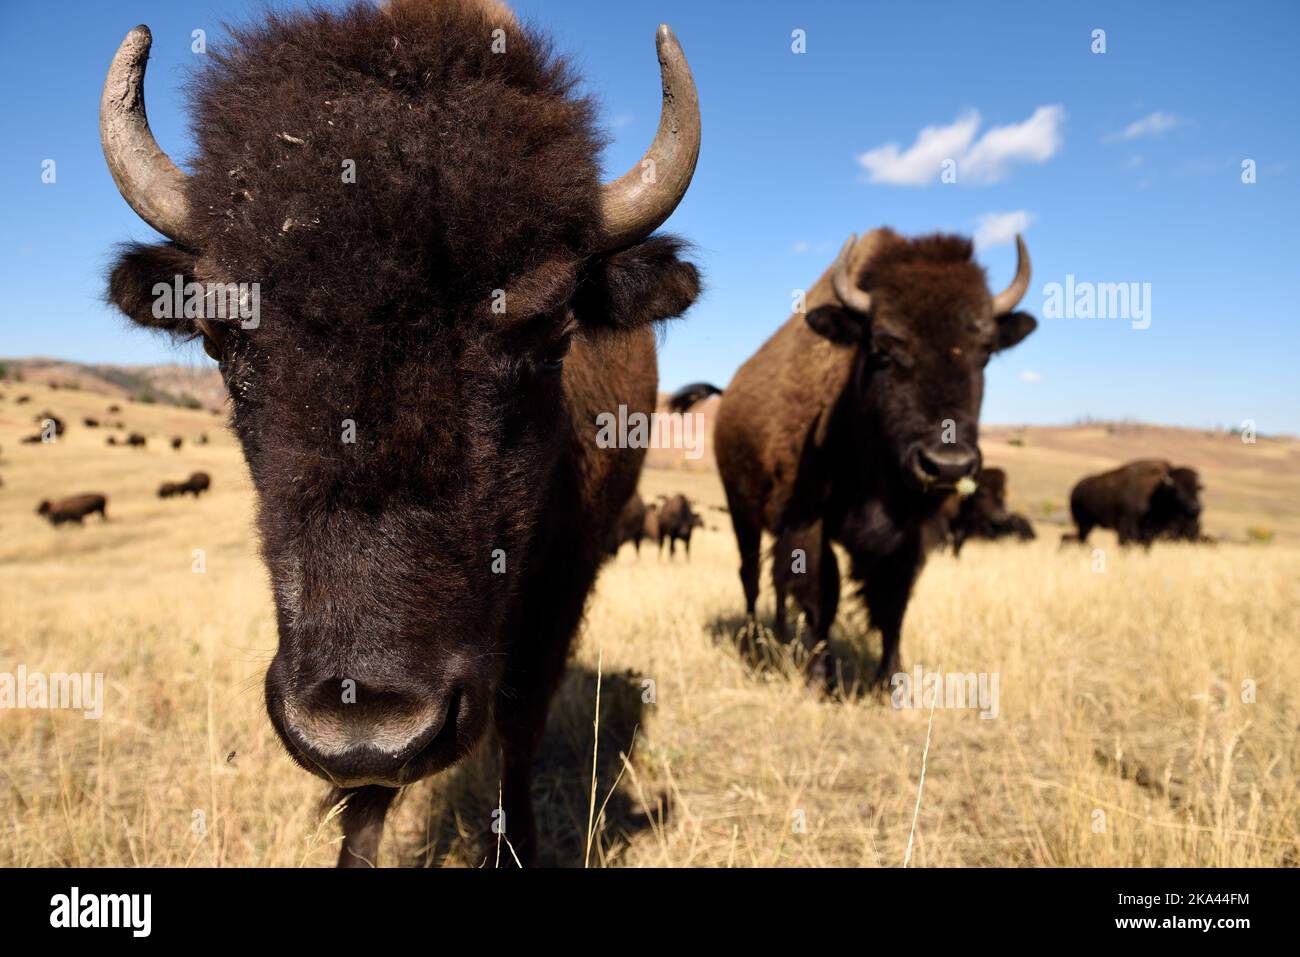 Vue en gros plan de 2 American Bison, ou Buffalo, sur les prairies du Dakota du Sud, États-Unis. Banque D'Images